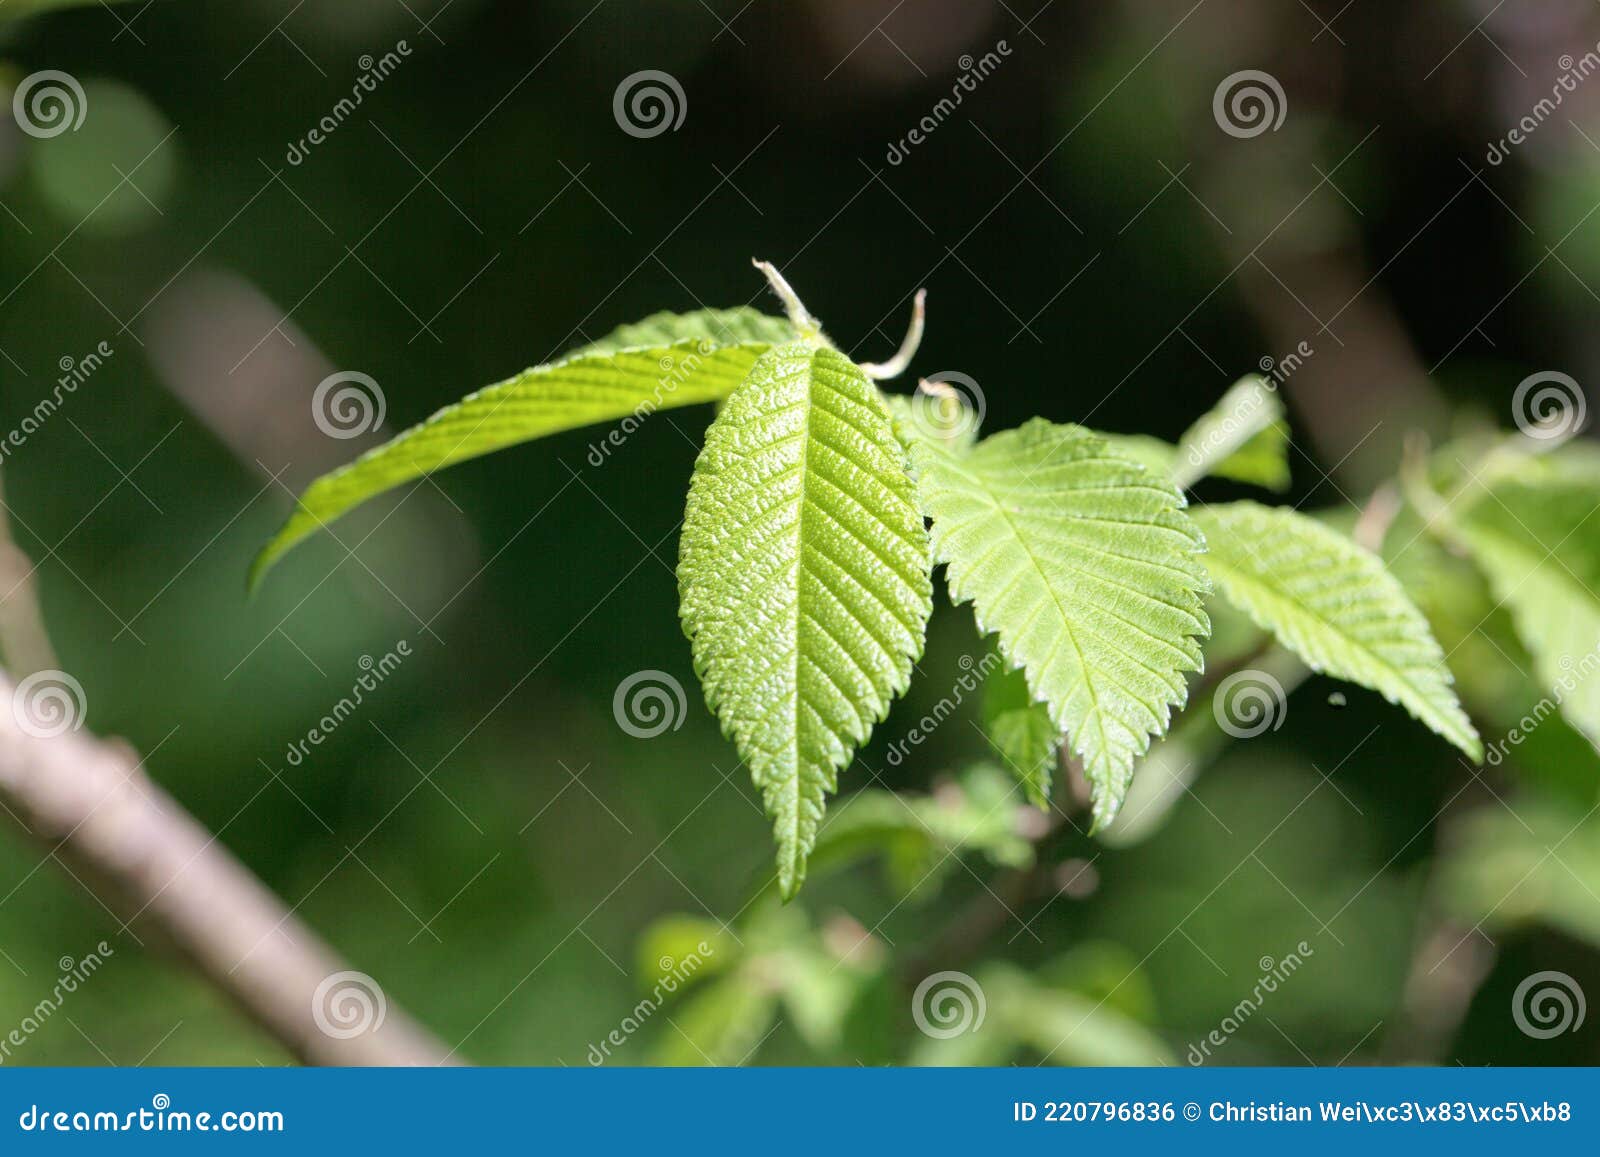 leaves of an american elm, ulmus americana